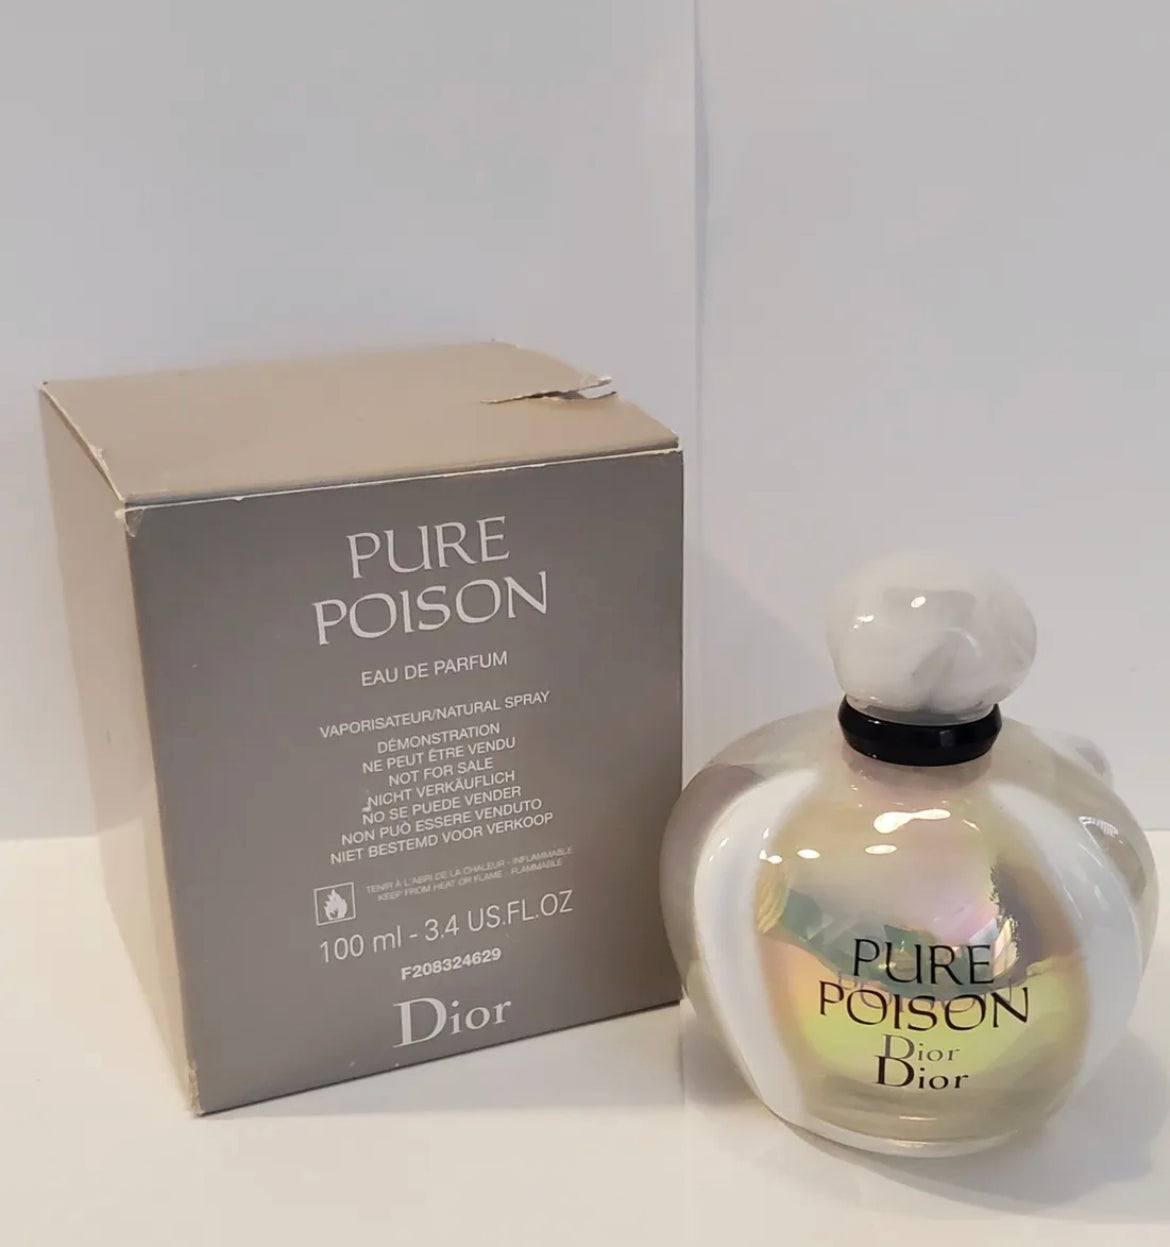 Burberry Brit Eau de Toilette Burberry perfume - a fragrance for